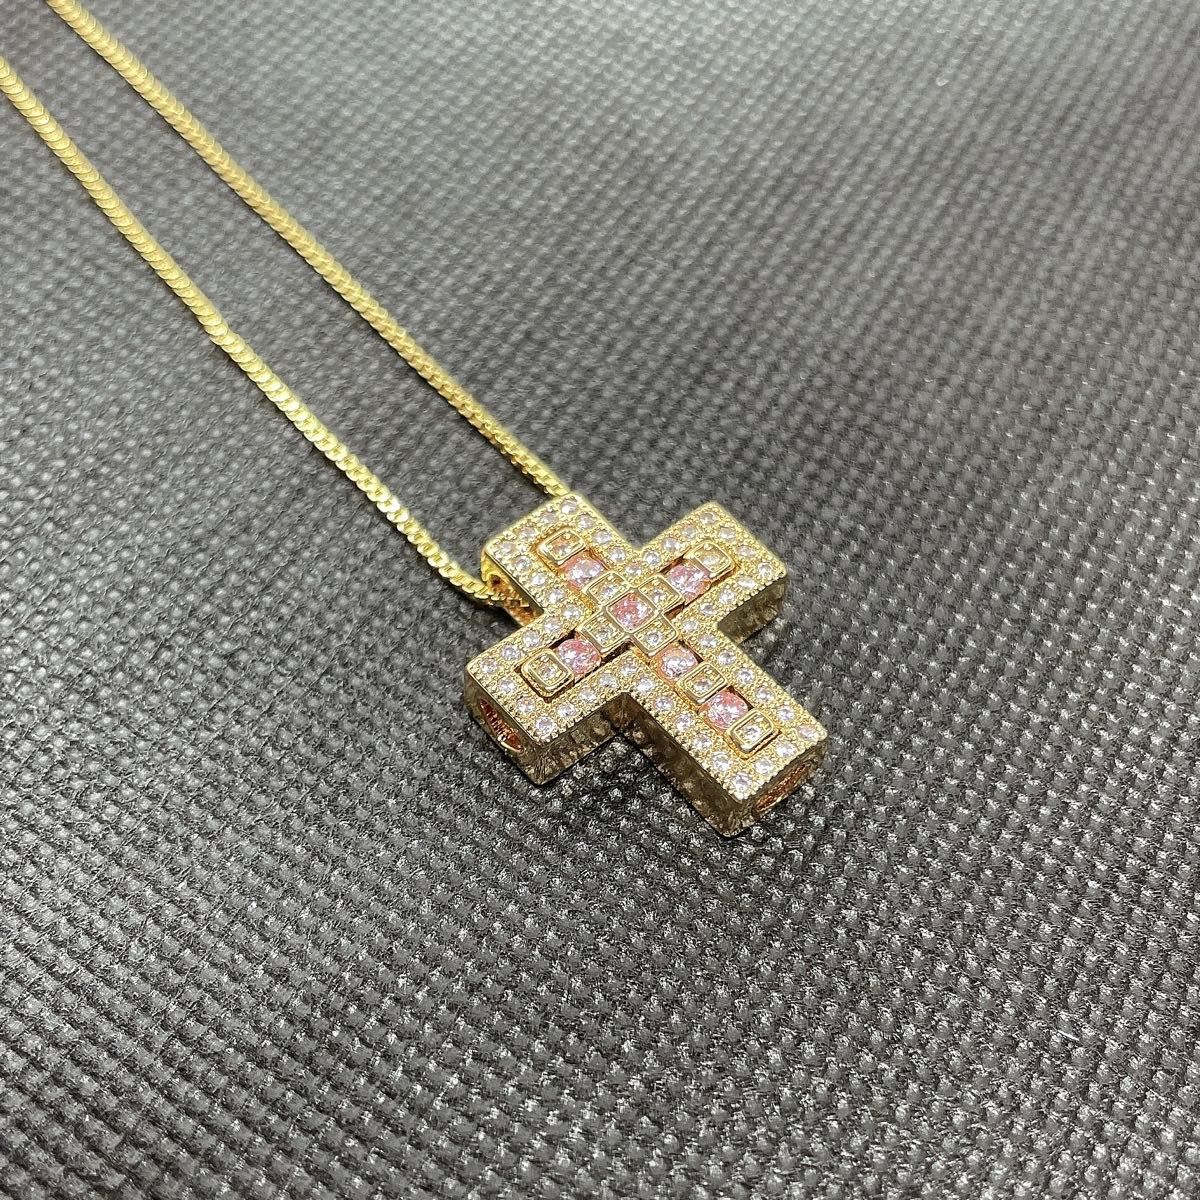 ネックレス ベルエポック ダブル クロス 十字架 キュービックジルコニア ピンク ストーン GOLD 人気 ベネチアンチェーン